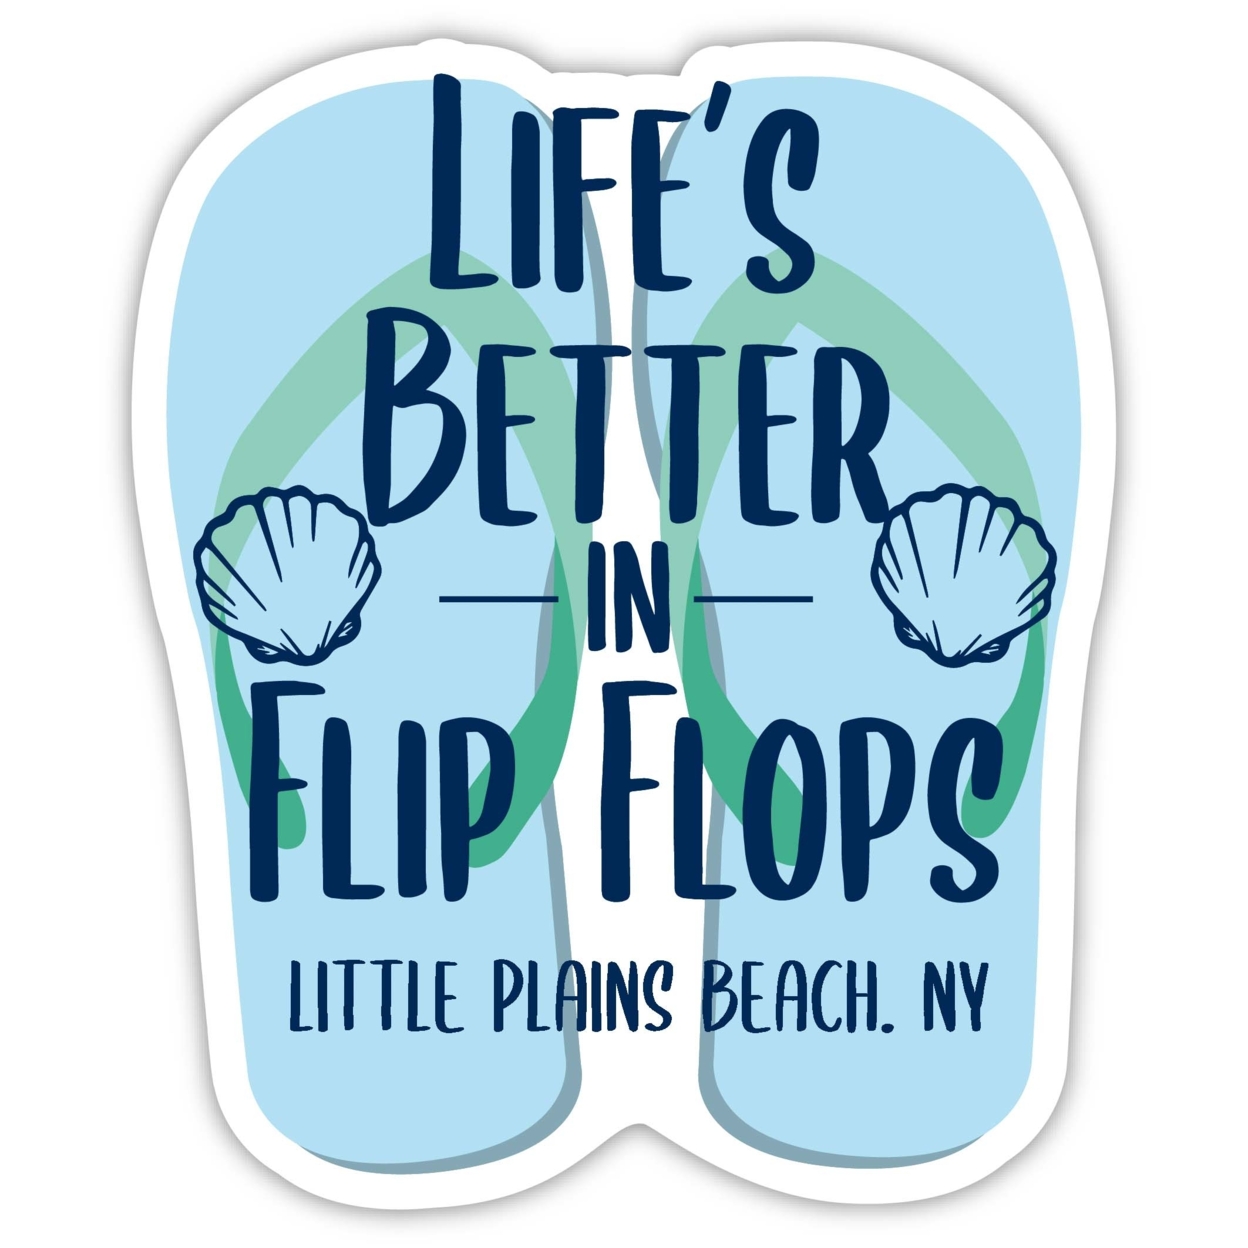 Little Plains Beach New York Souvenir 4 Inch Vinyl Decal Sticker Flip Flop Design